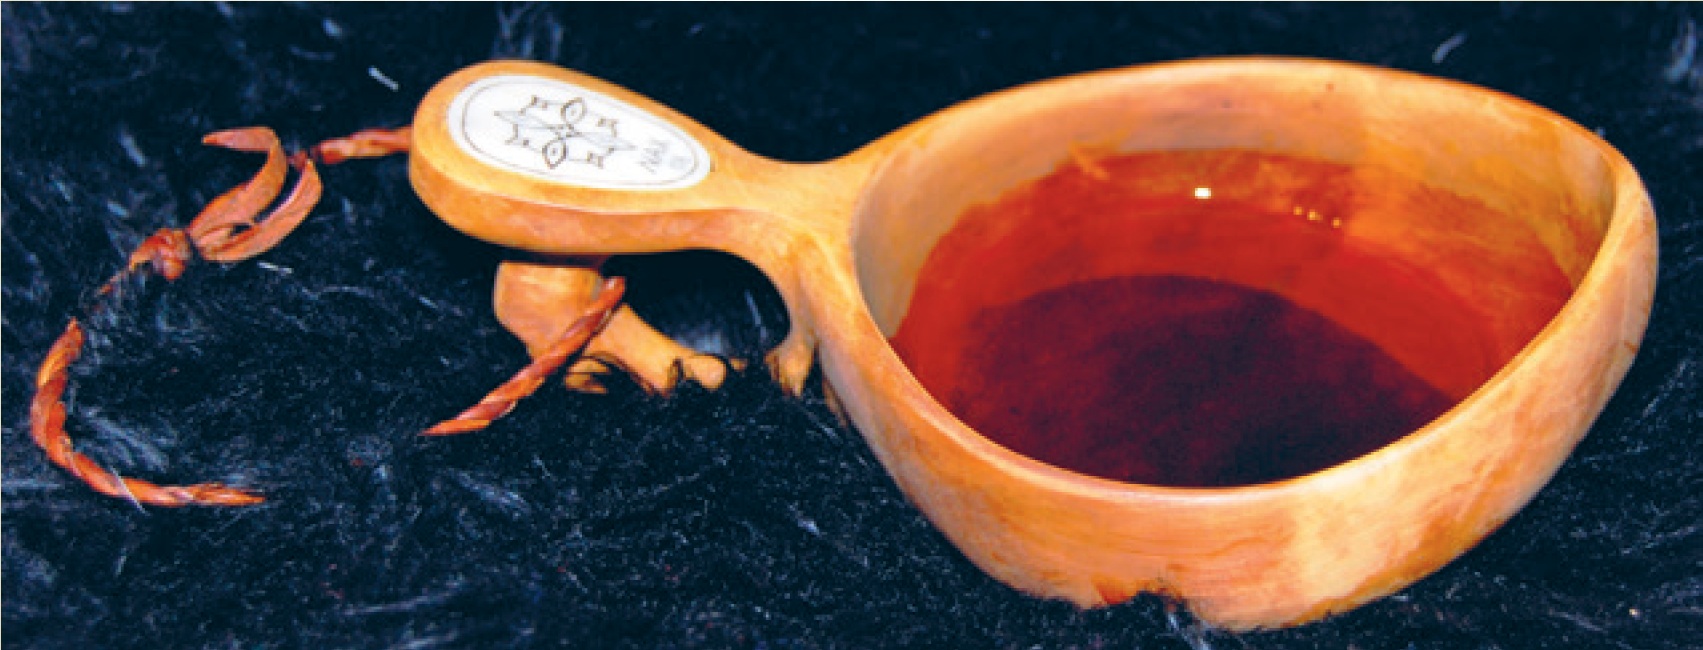 Guksi. Kaffekopp av rikule i bruk. Eierens initialer er inngravert. Foto: Samisk arkiv / Sámi Arkiiva